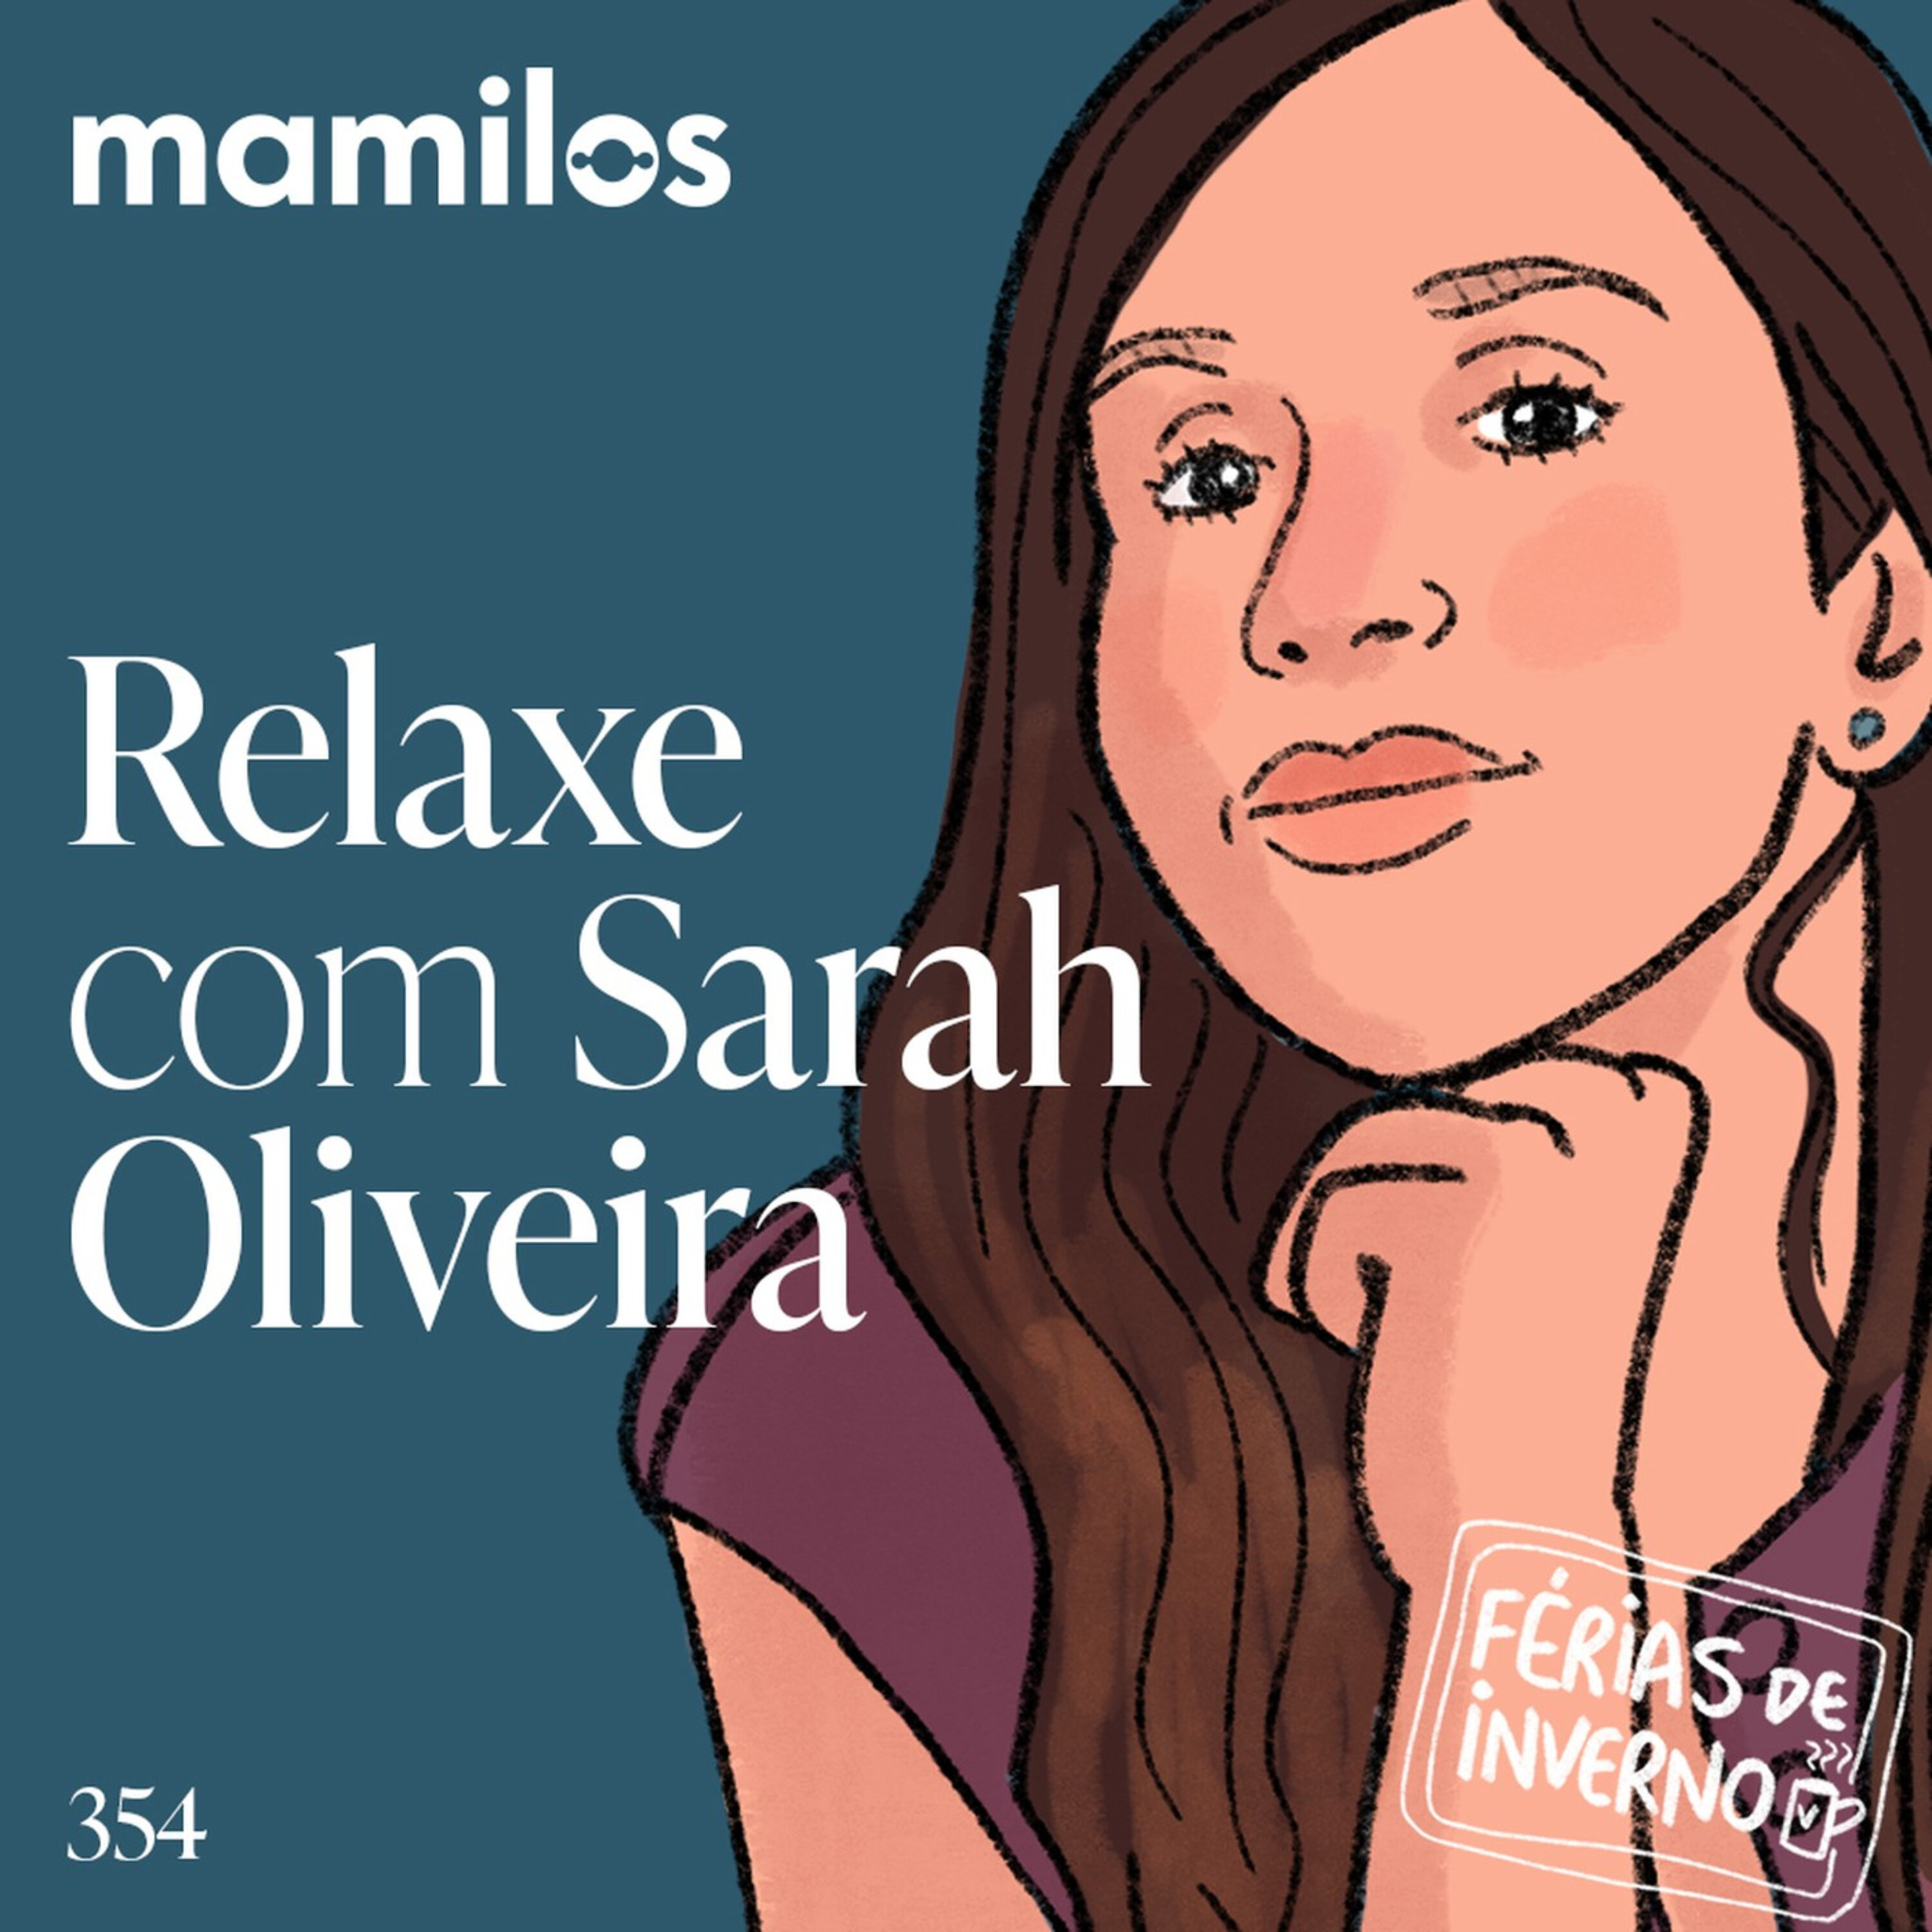 Relaxe com Sarah Oliveira